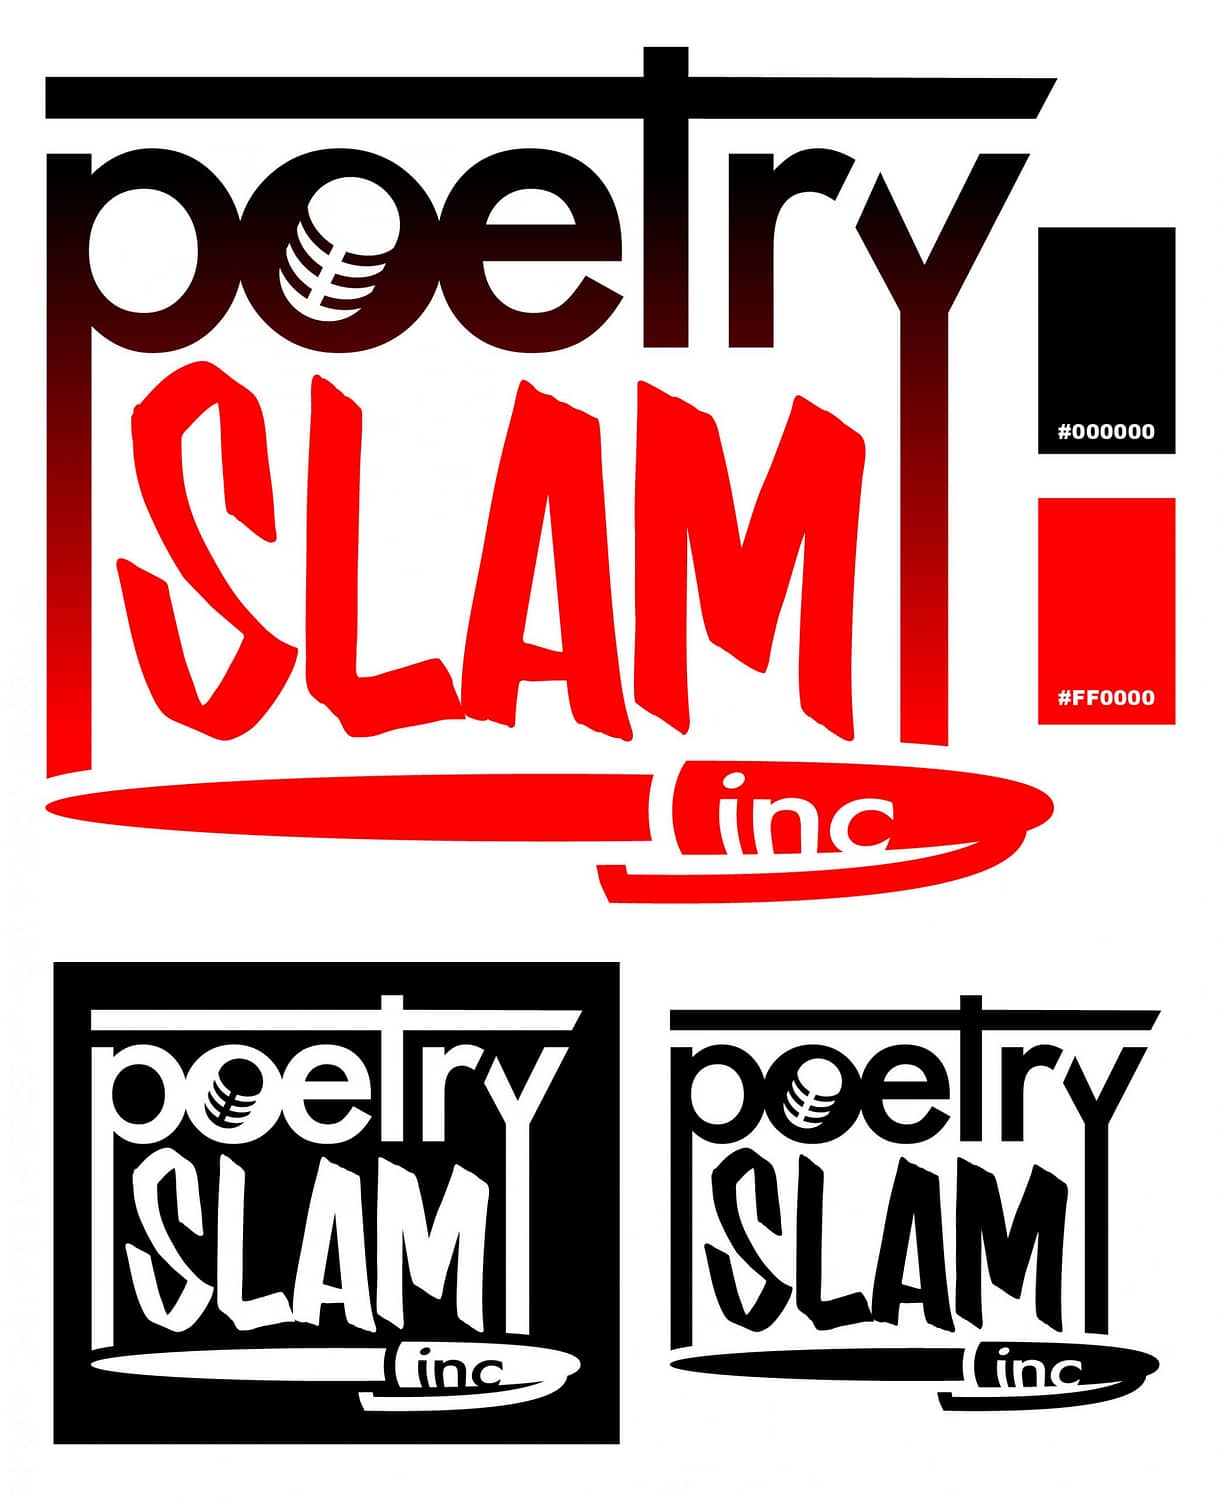 Poetry Slam Inc logo redsign